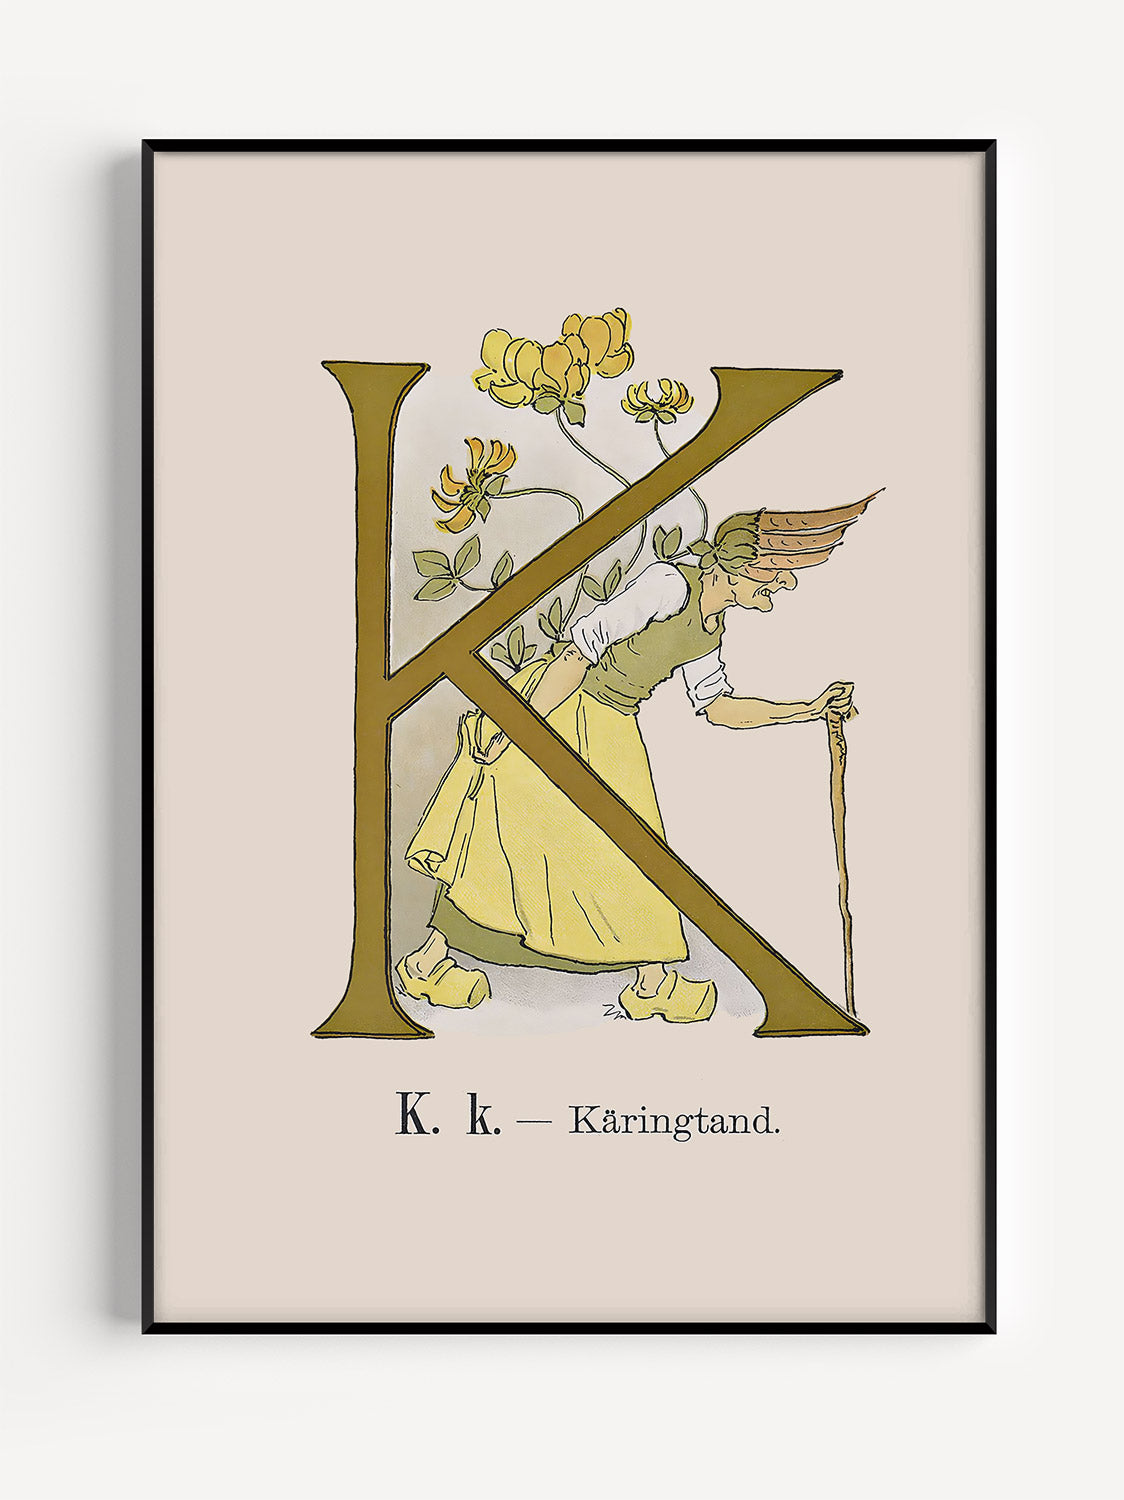 Prinsarnes Alfabet - Bokstaven K - Fine art prints - poster - av Ottilias originalillustrationer från 1800-talet.